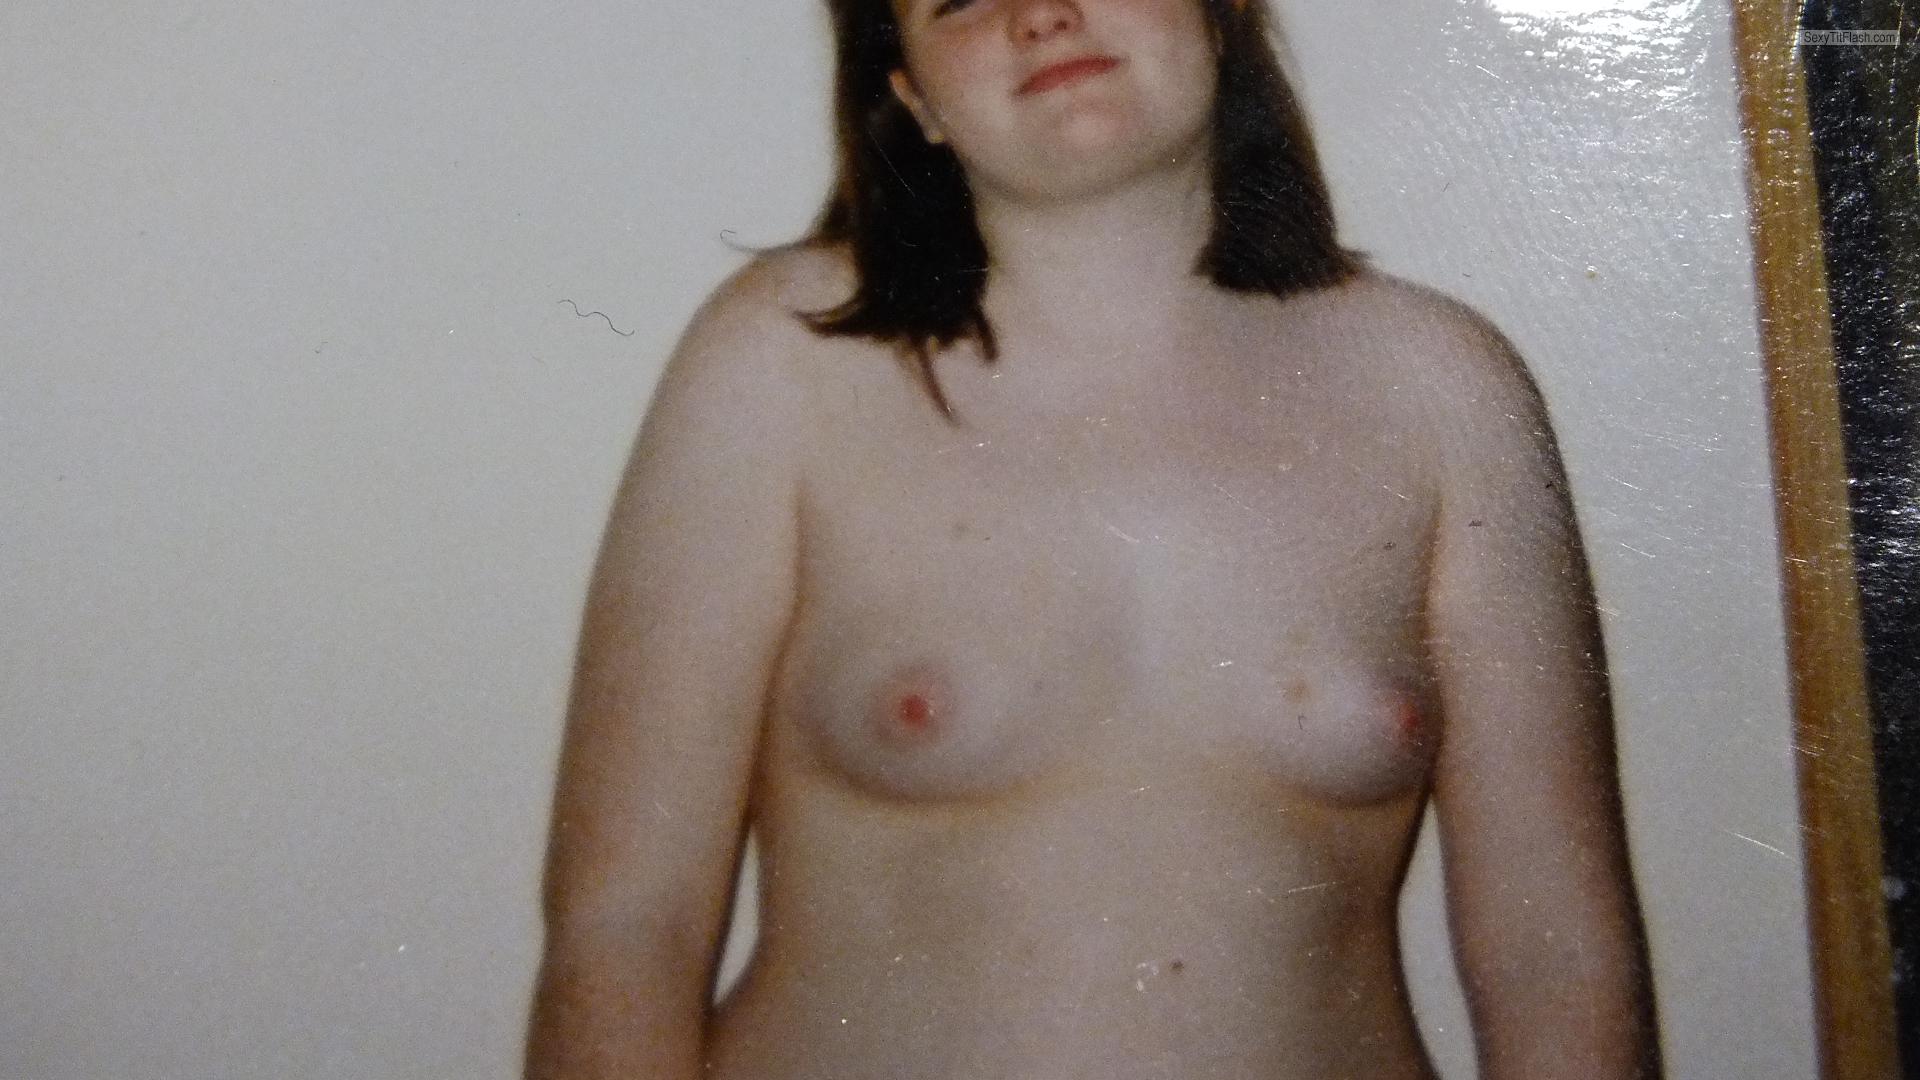 Tit Flash: My Small Tits - Topless Sharroncalloway from United Kingdom